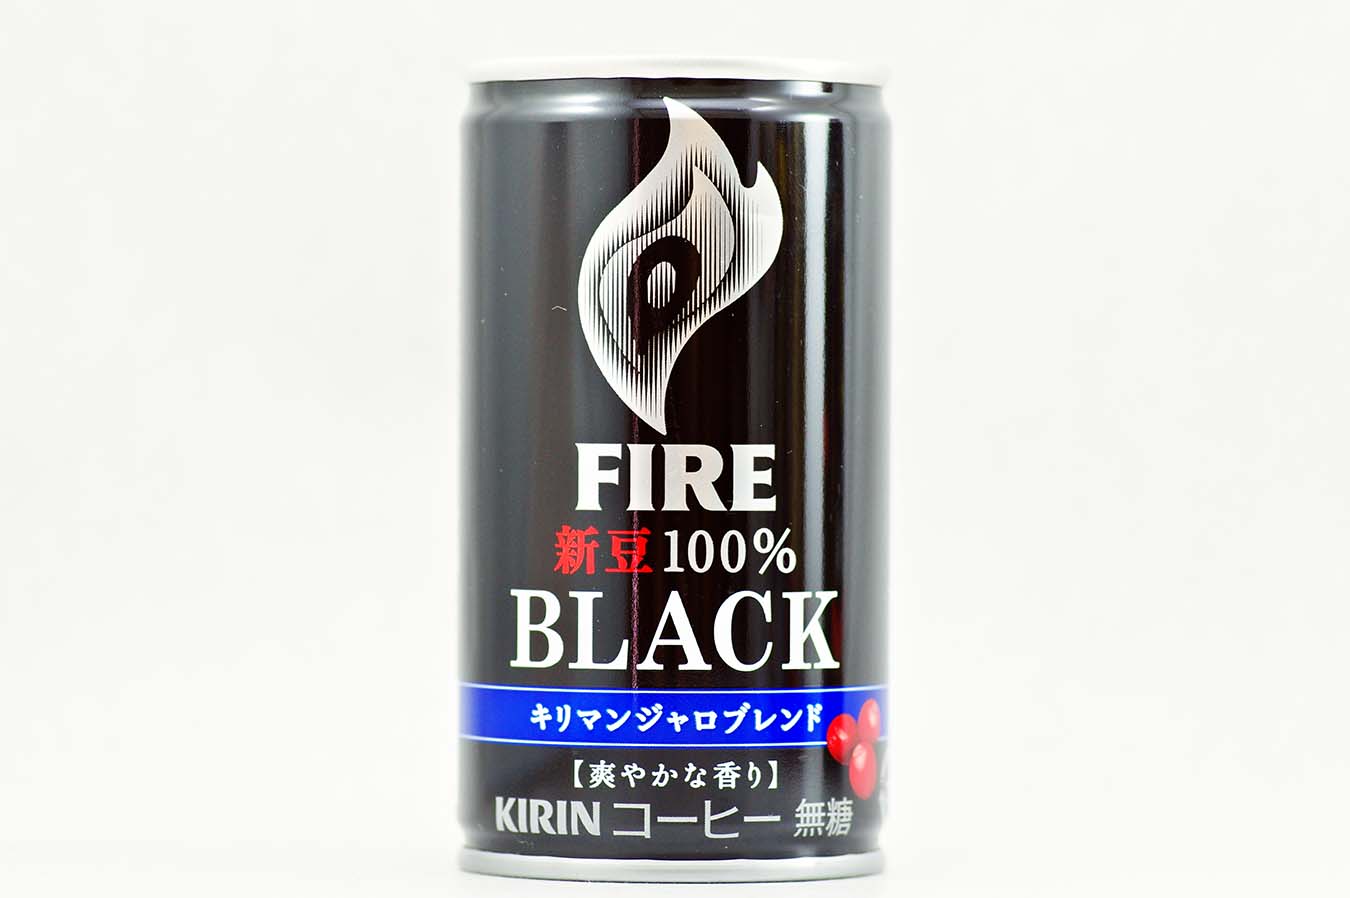 FIRE 新豆100％ブラック＜キリマンジャロブレンド＞ 165g缶 2015年10月